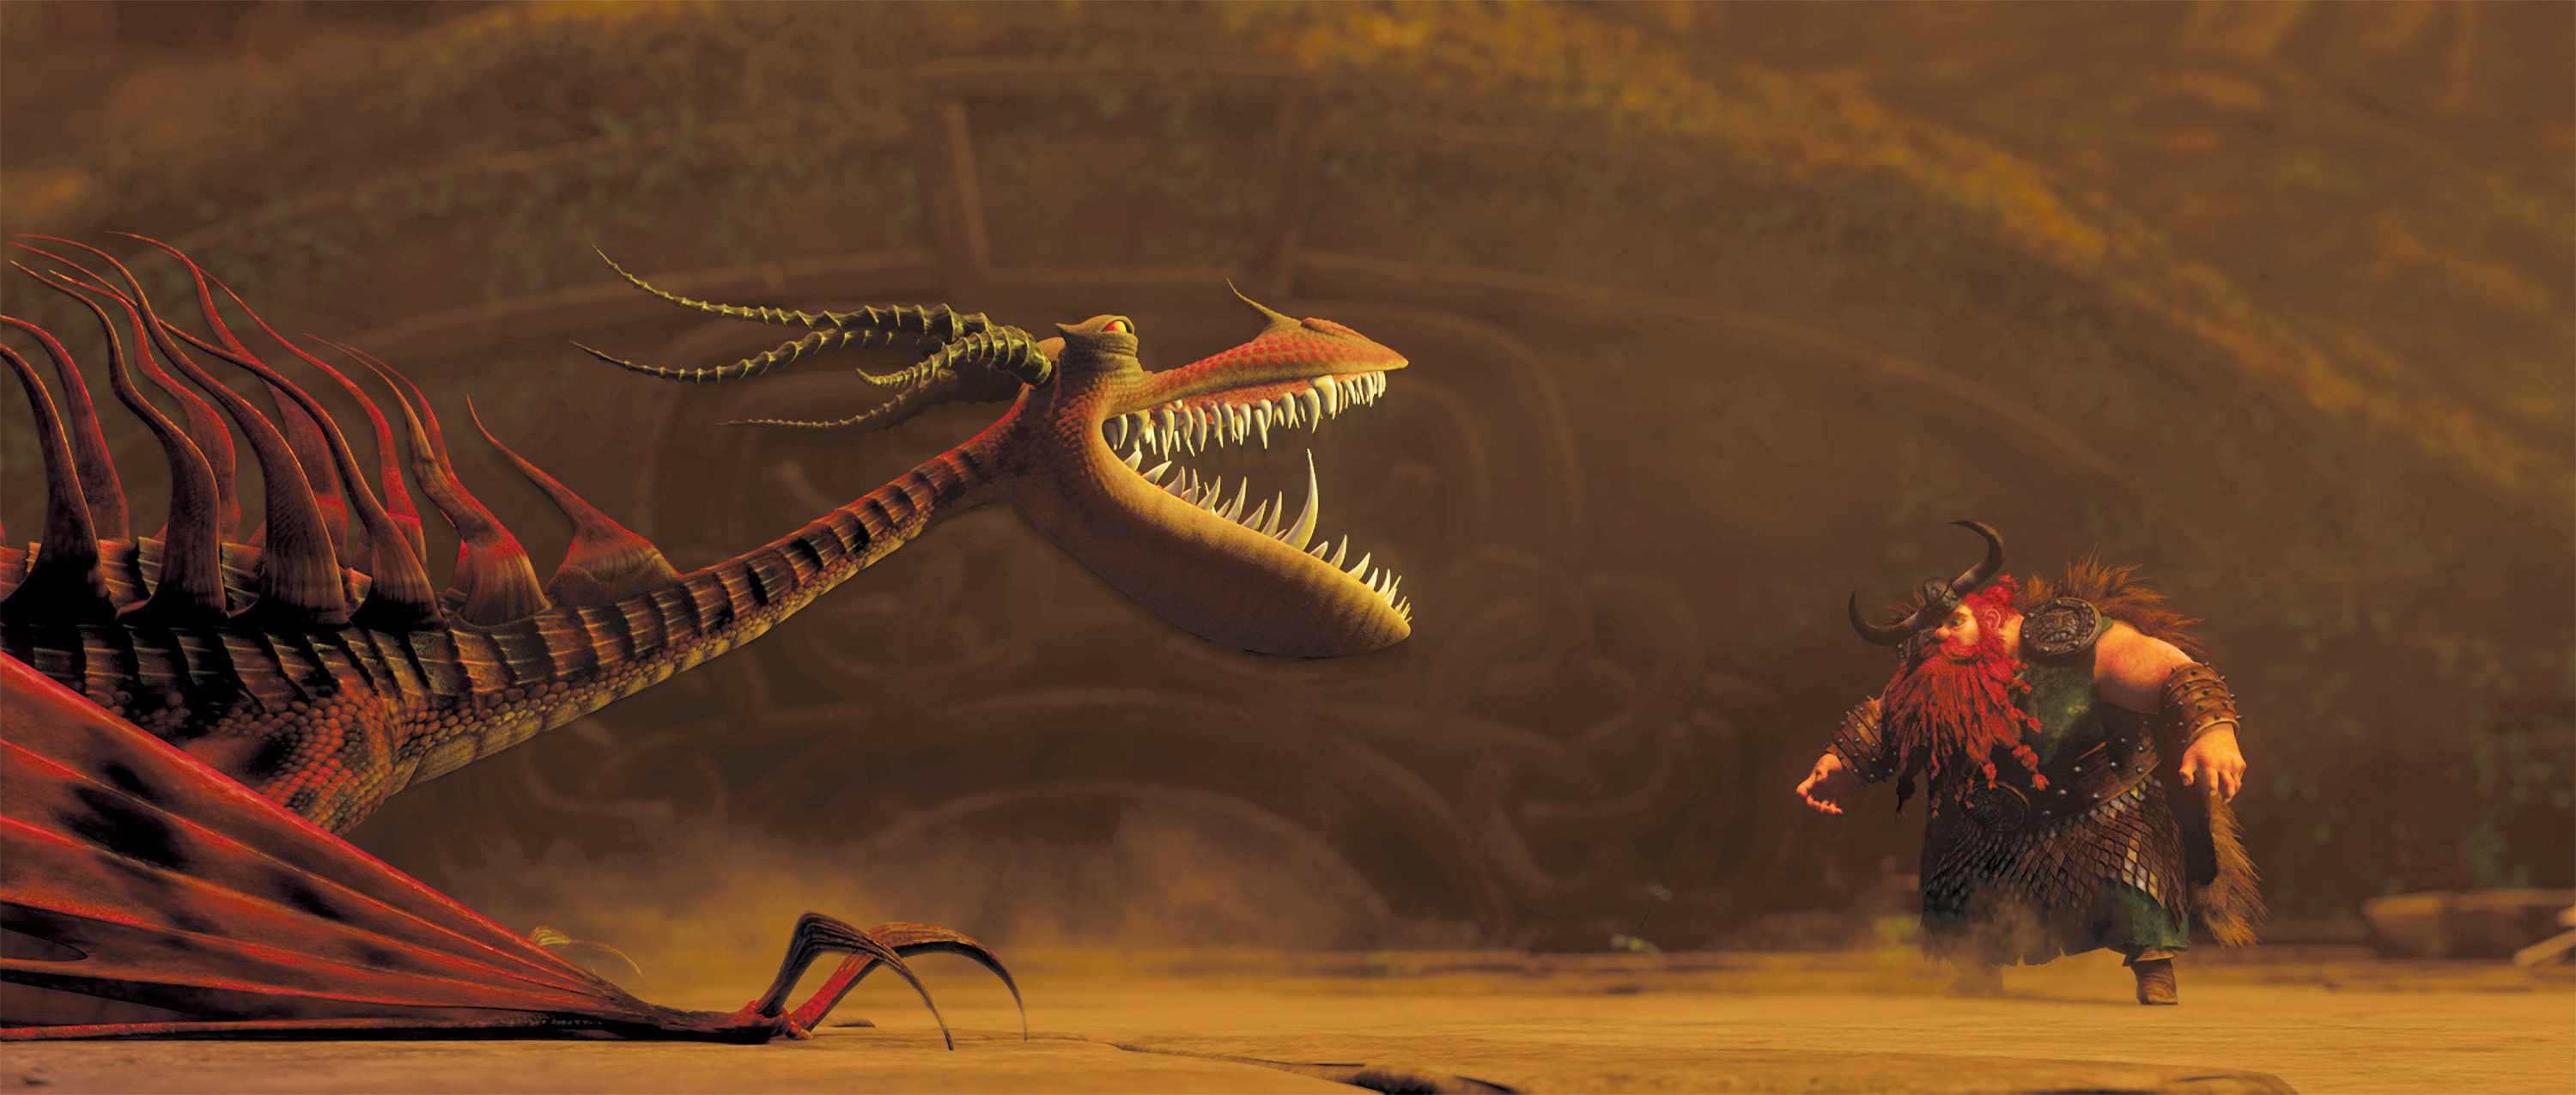 Monstrous Nightmare Dragon versus Stoic Desktop Wallpaper